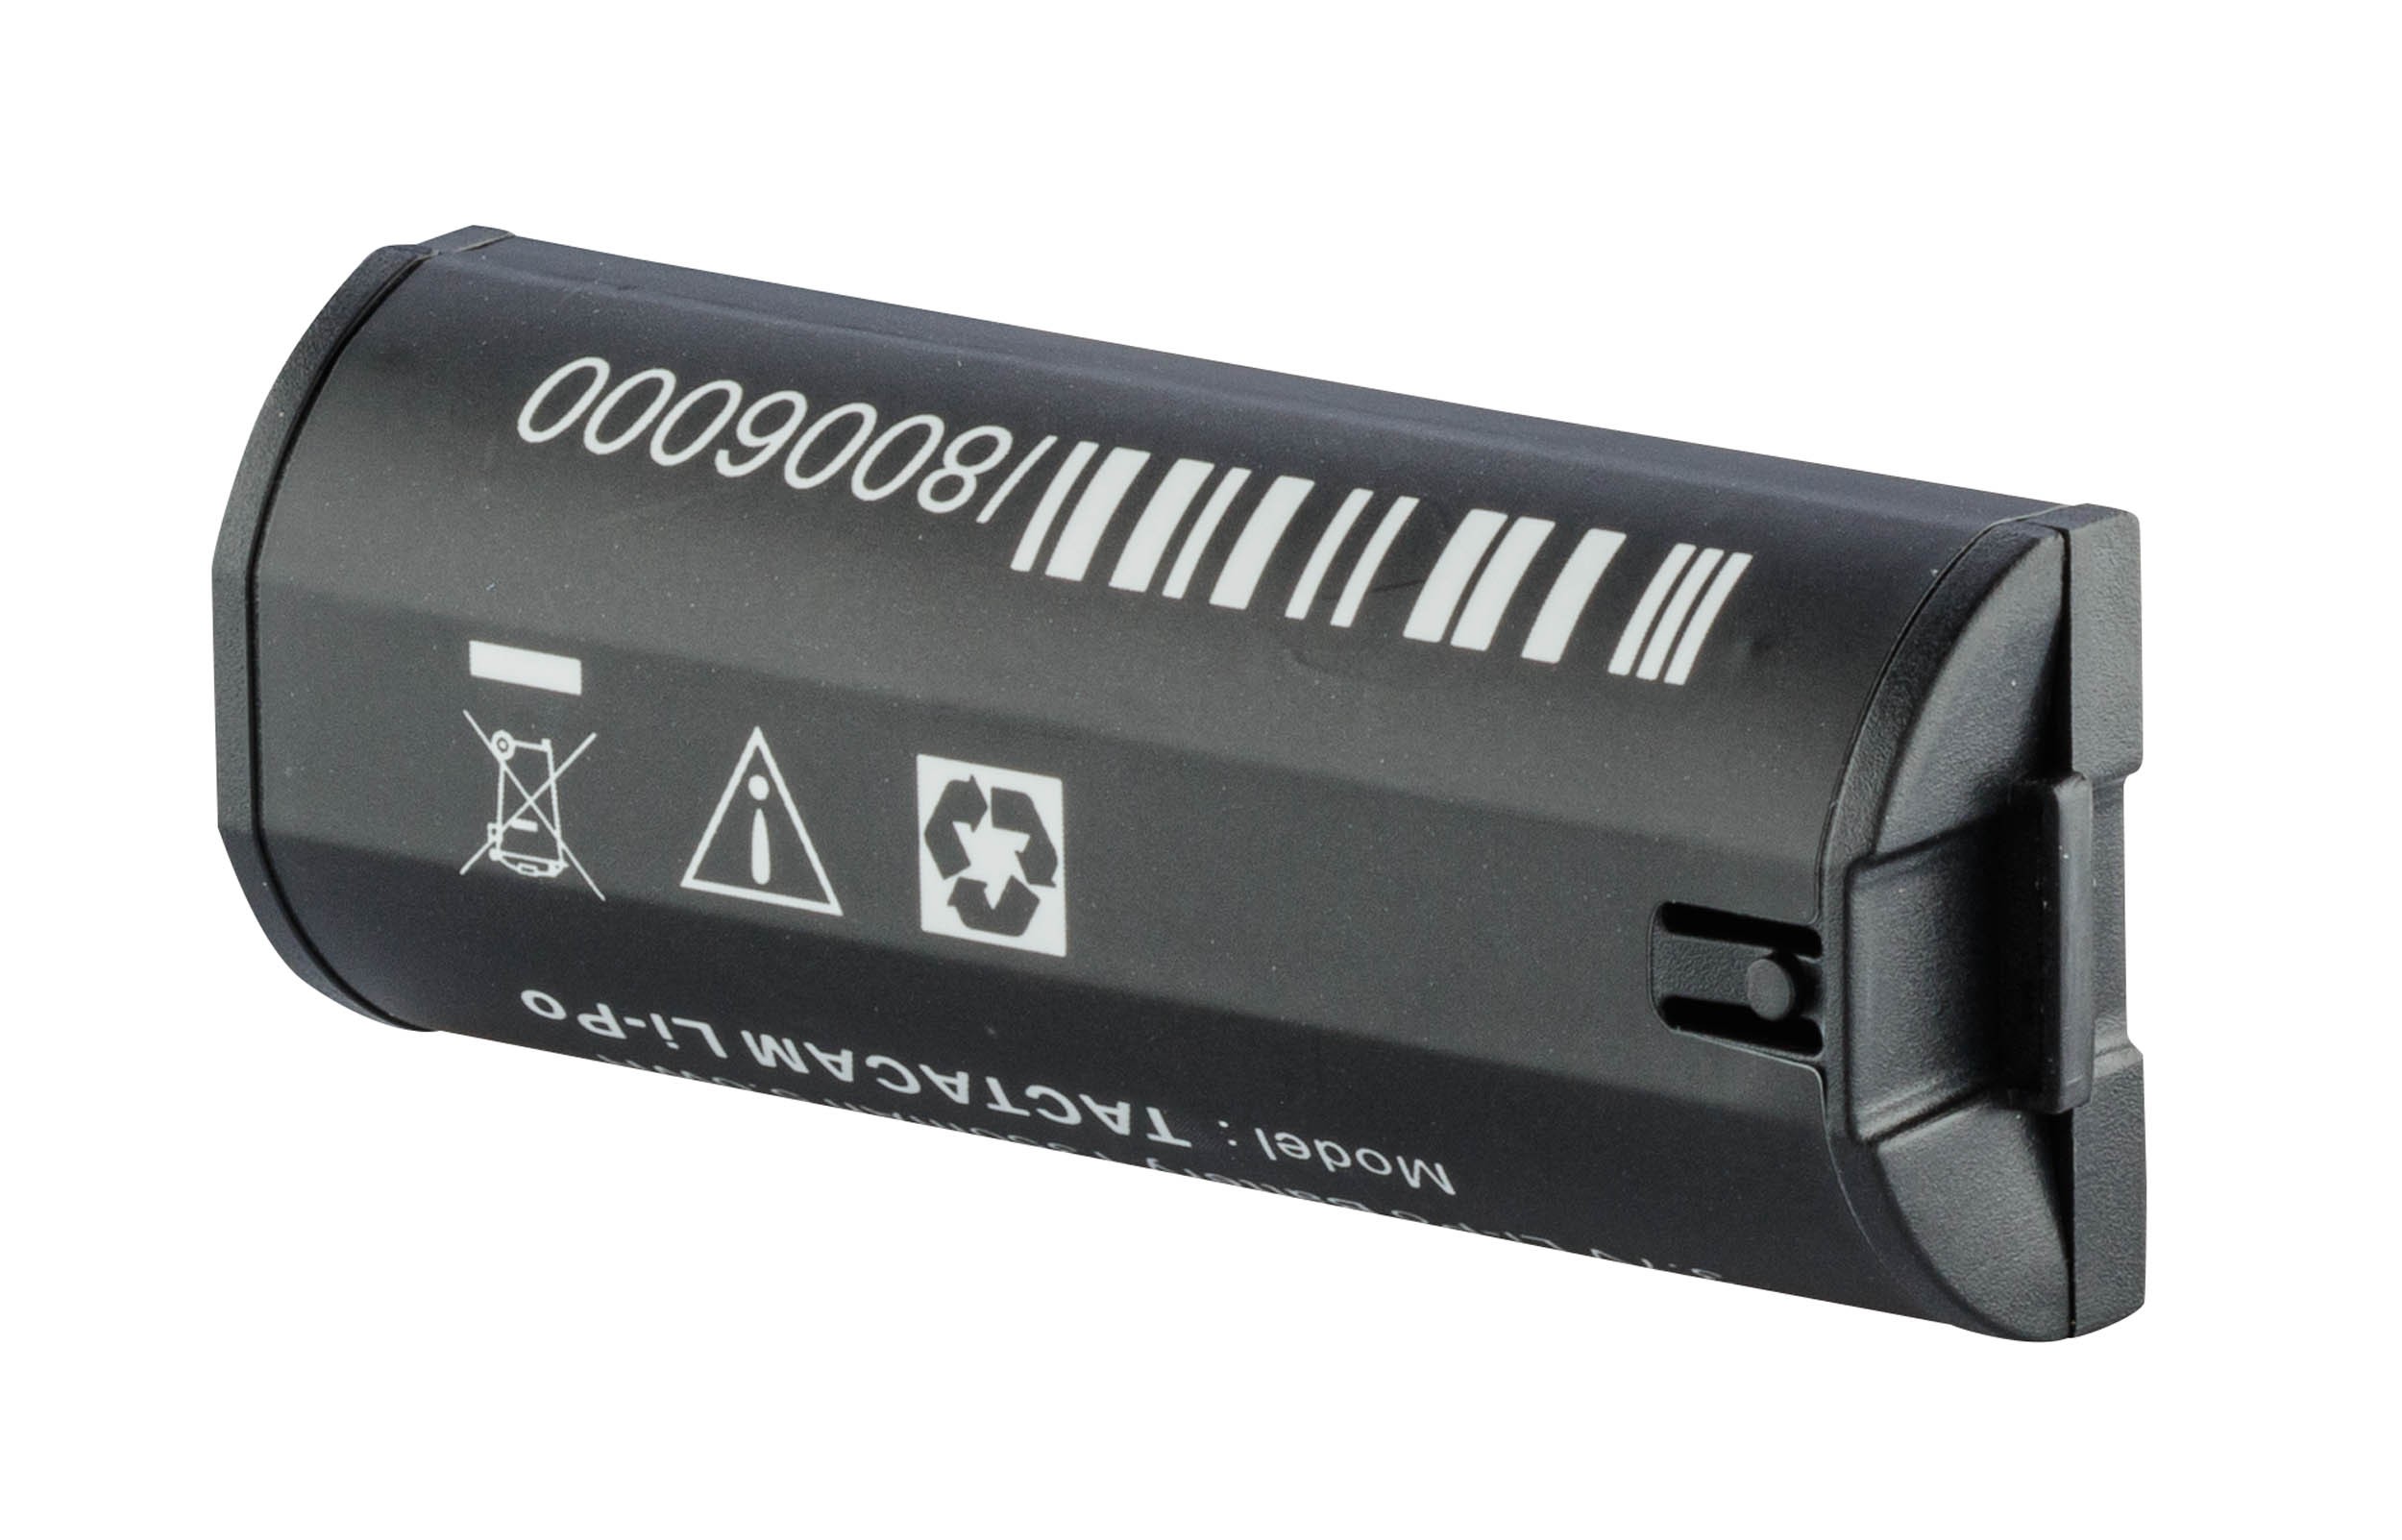 Batterie supplémentaire pour caméra de chasse Tactacam 5.0, MADE IN CHASSE - Equipements de chasse